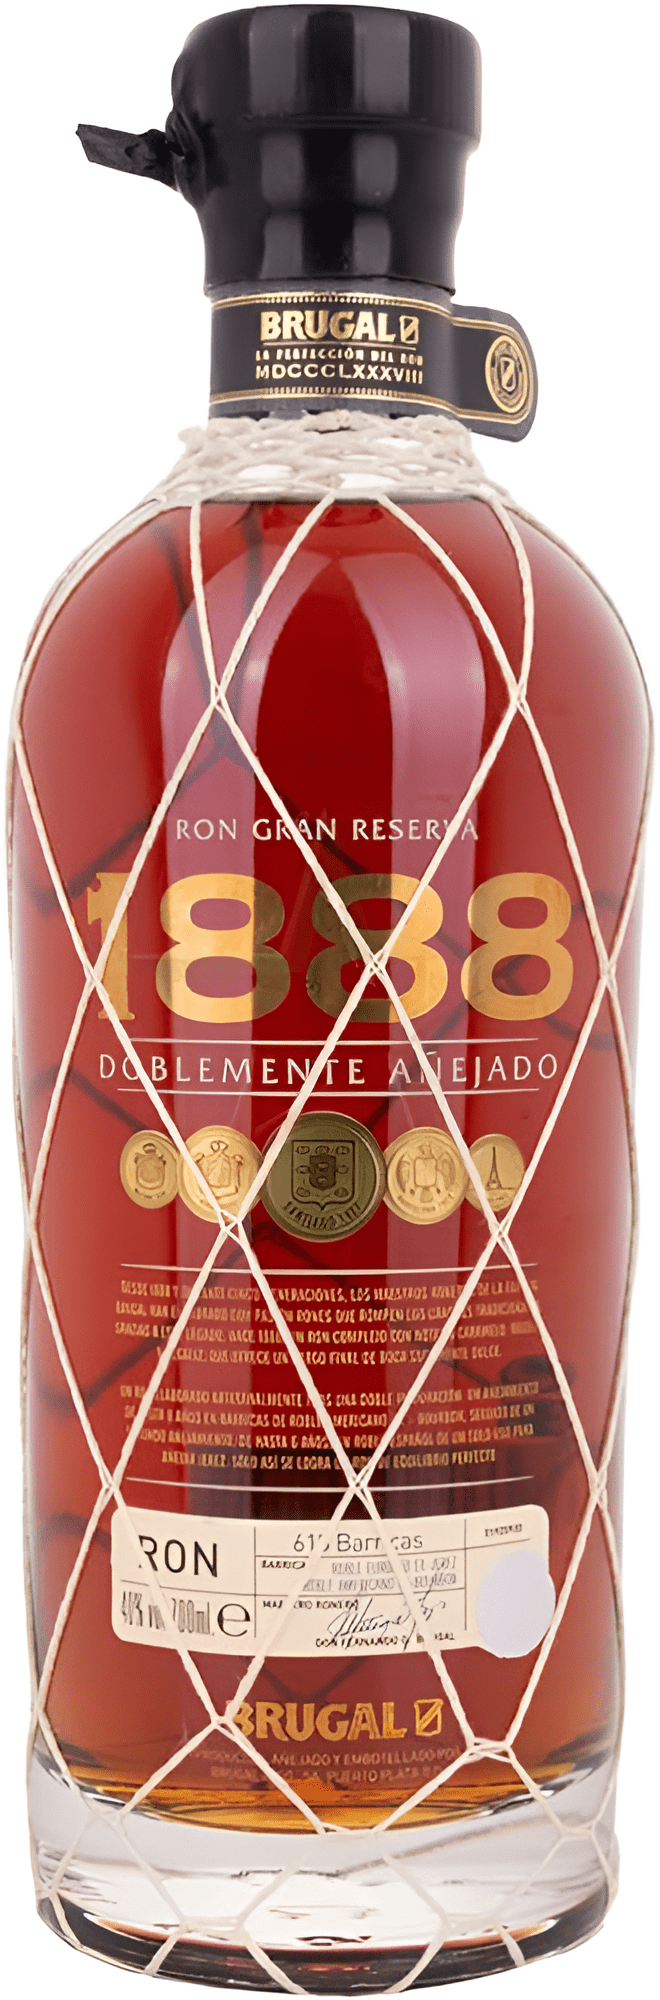 Brugal 1888 Ron Gran Reserva Doblemente Anejado 40% 0,7l (čistá fľaša)